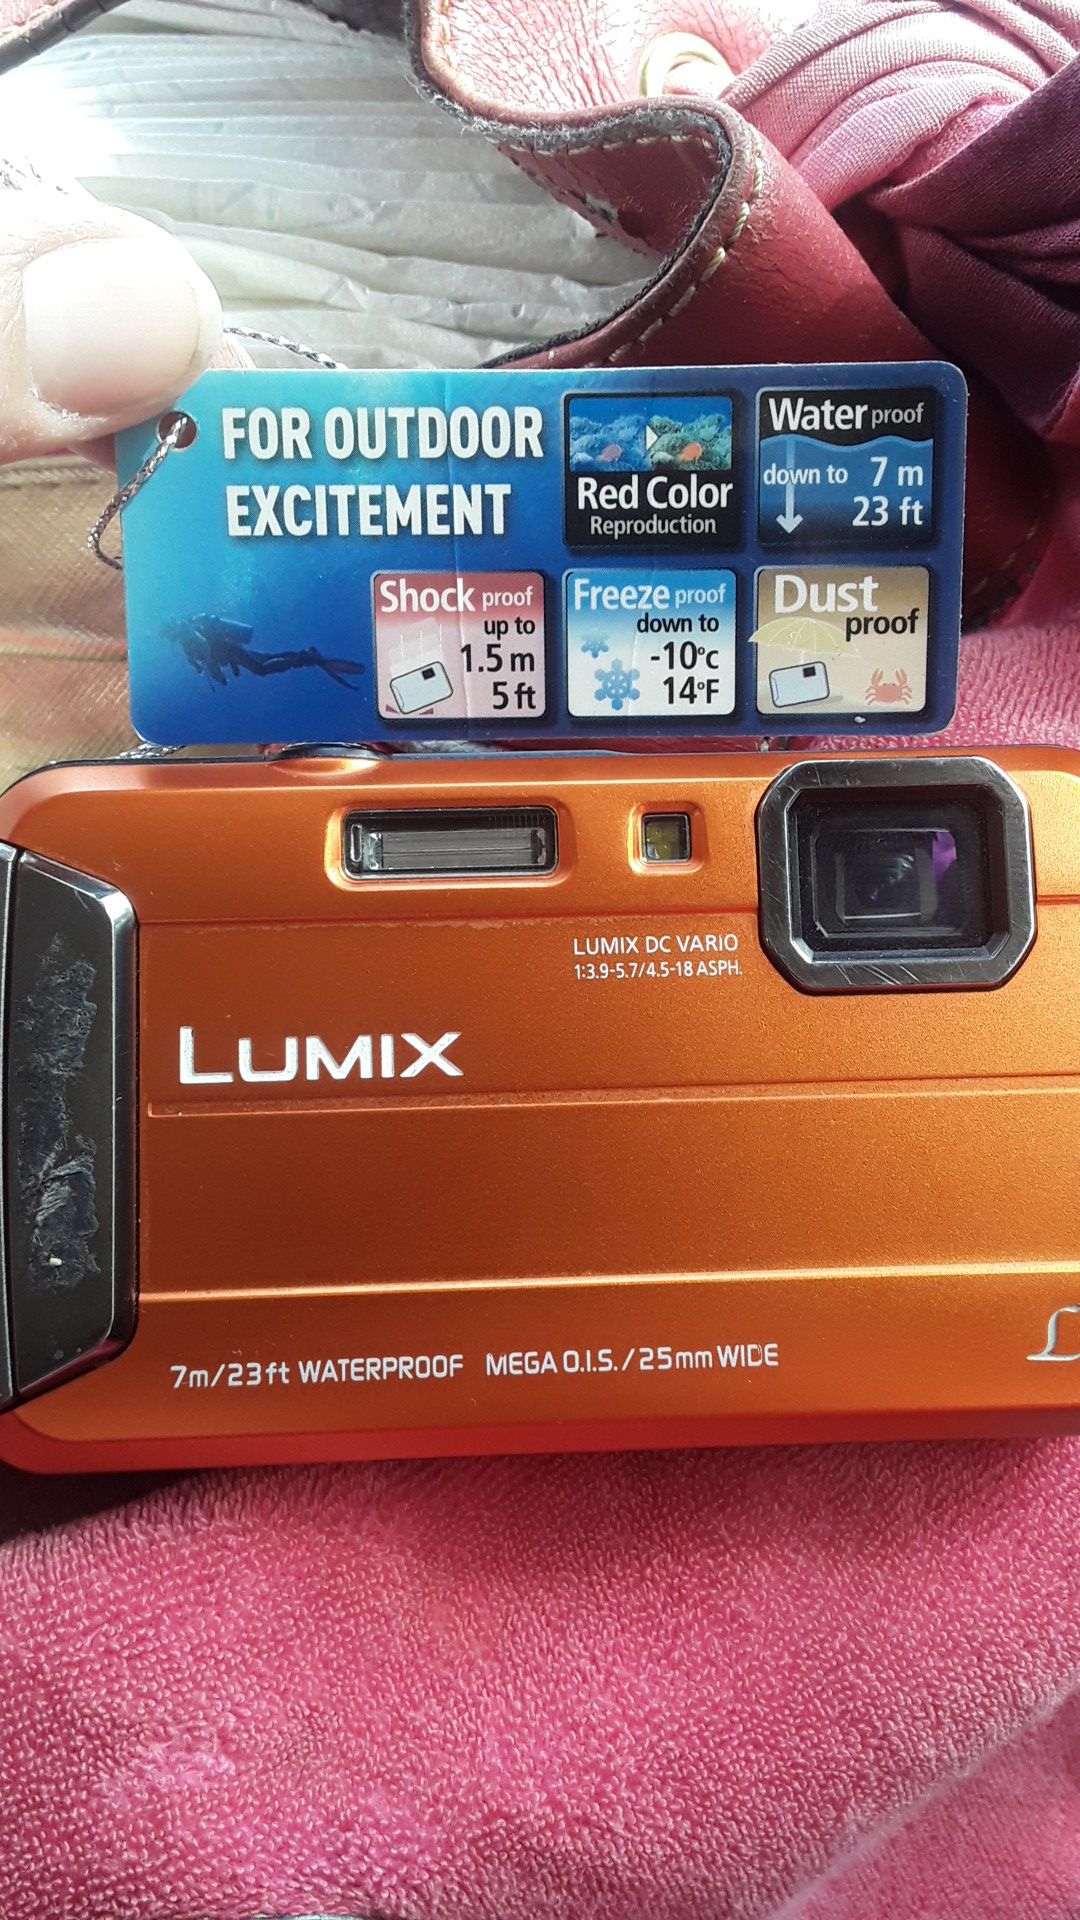 Panasonic Lumix DMC-TS25 Digital Camera